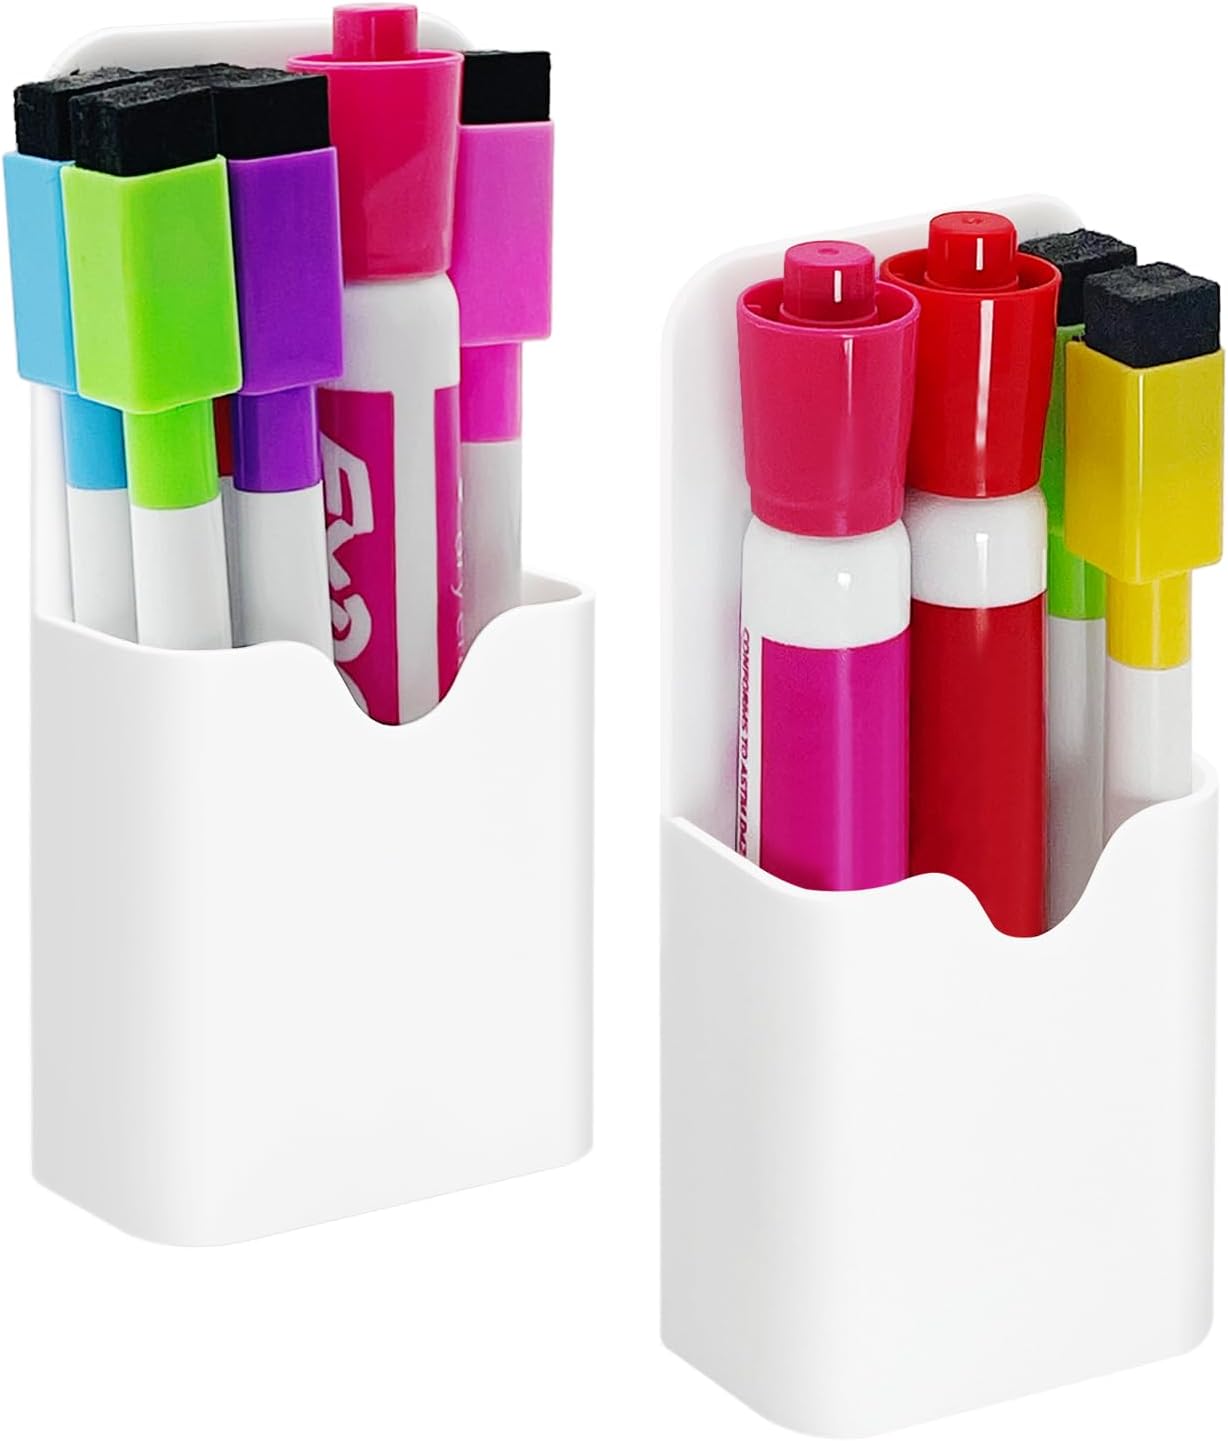 2PCS Magnetic Dry Erase Marker Pen Holder Small for Fridge Whiteboard